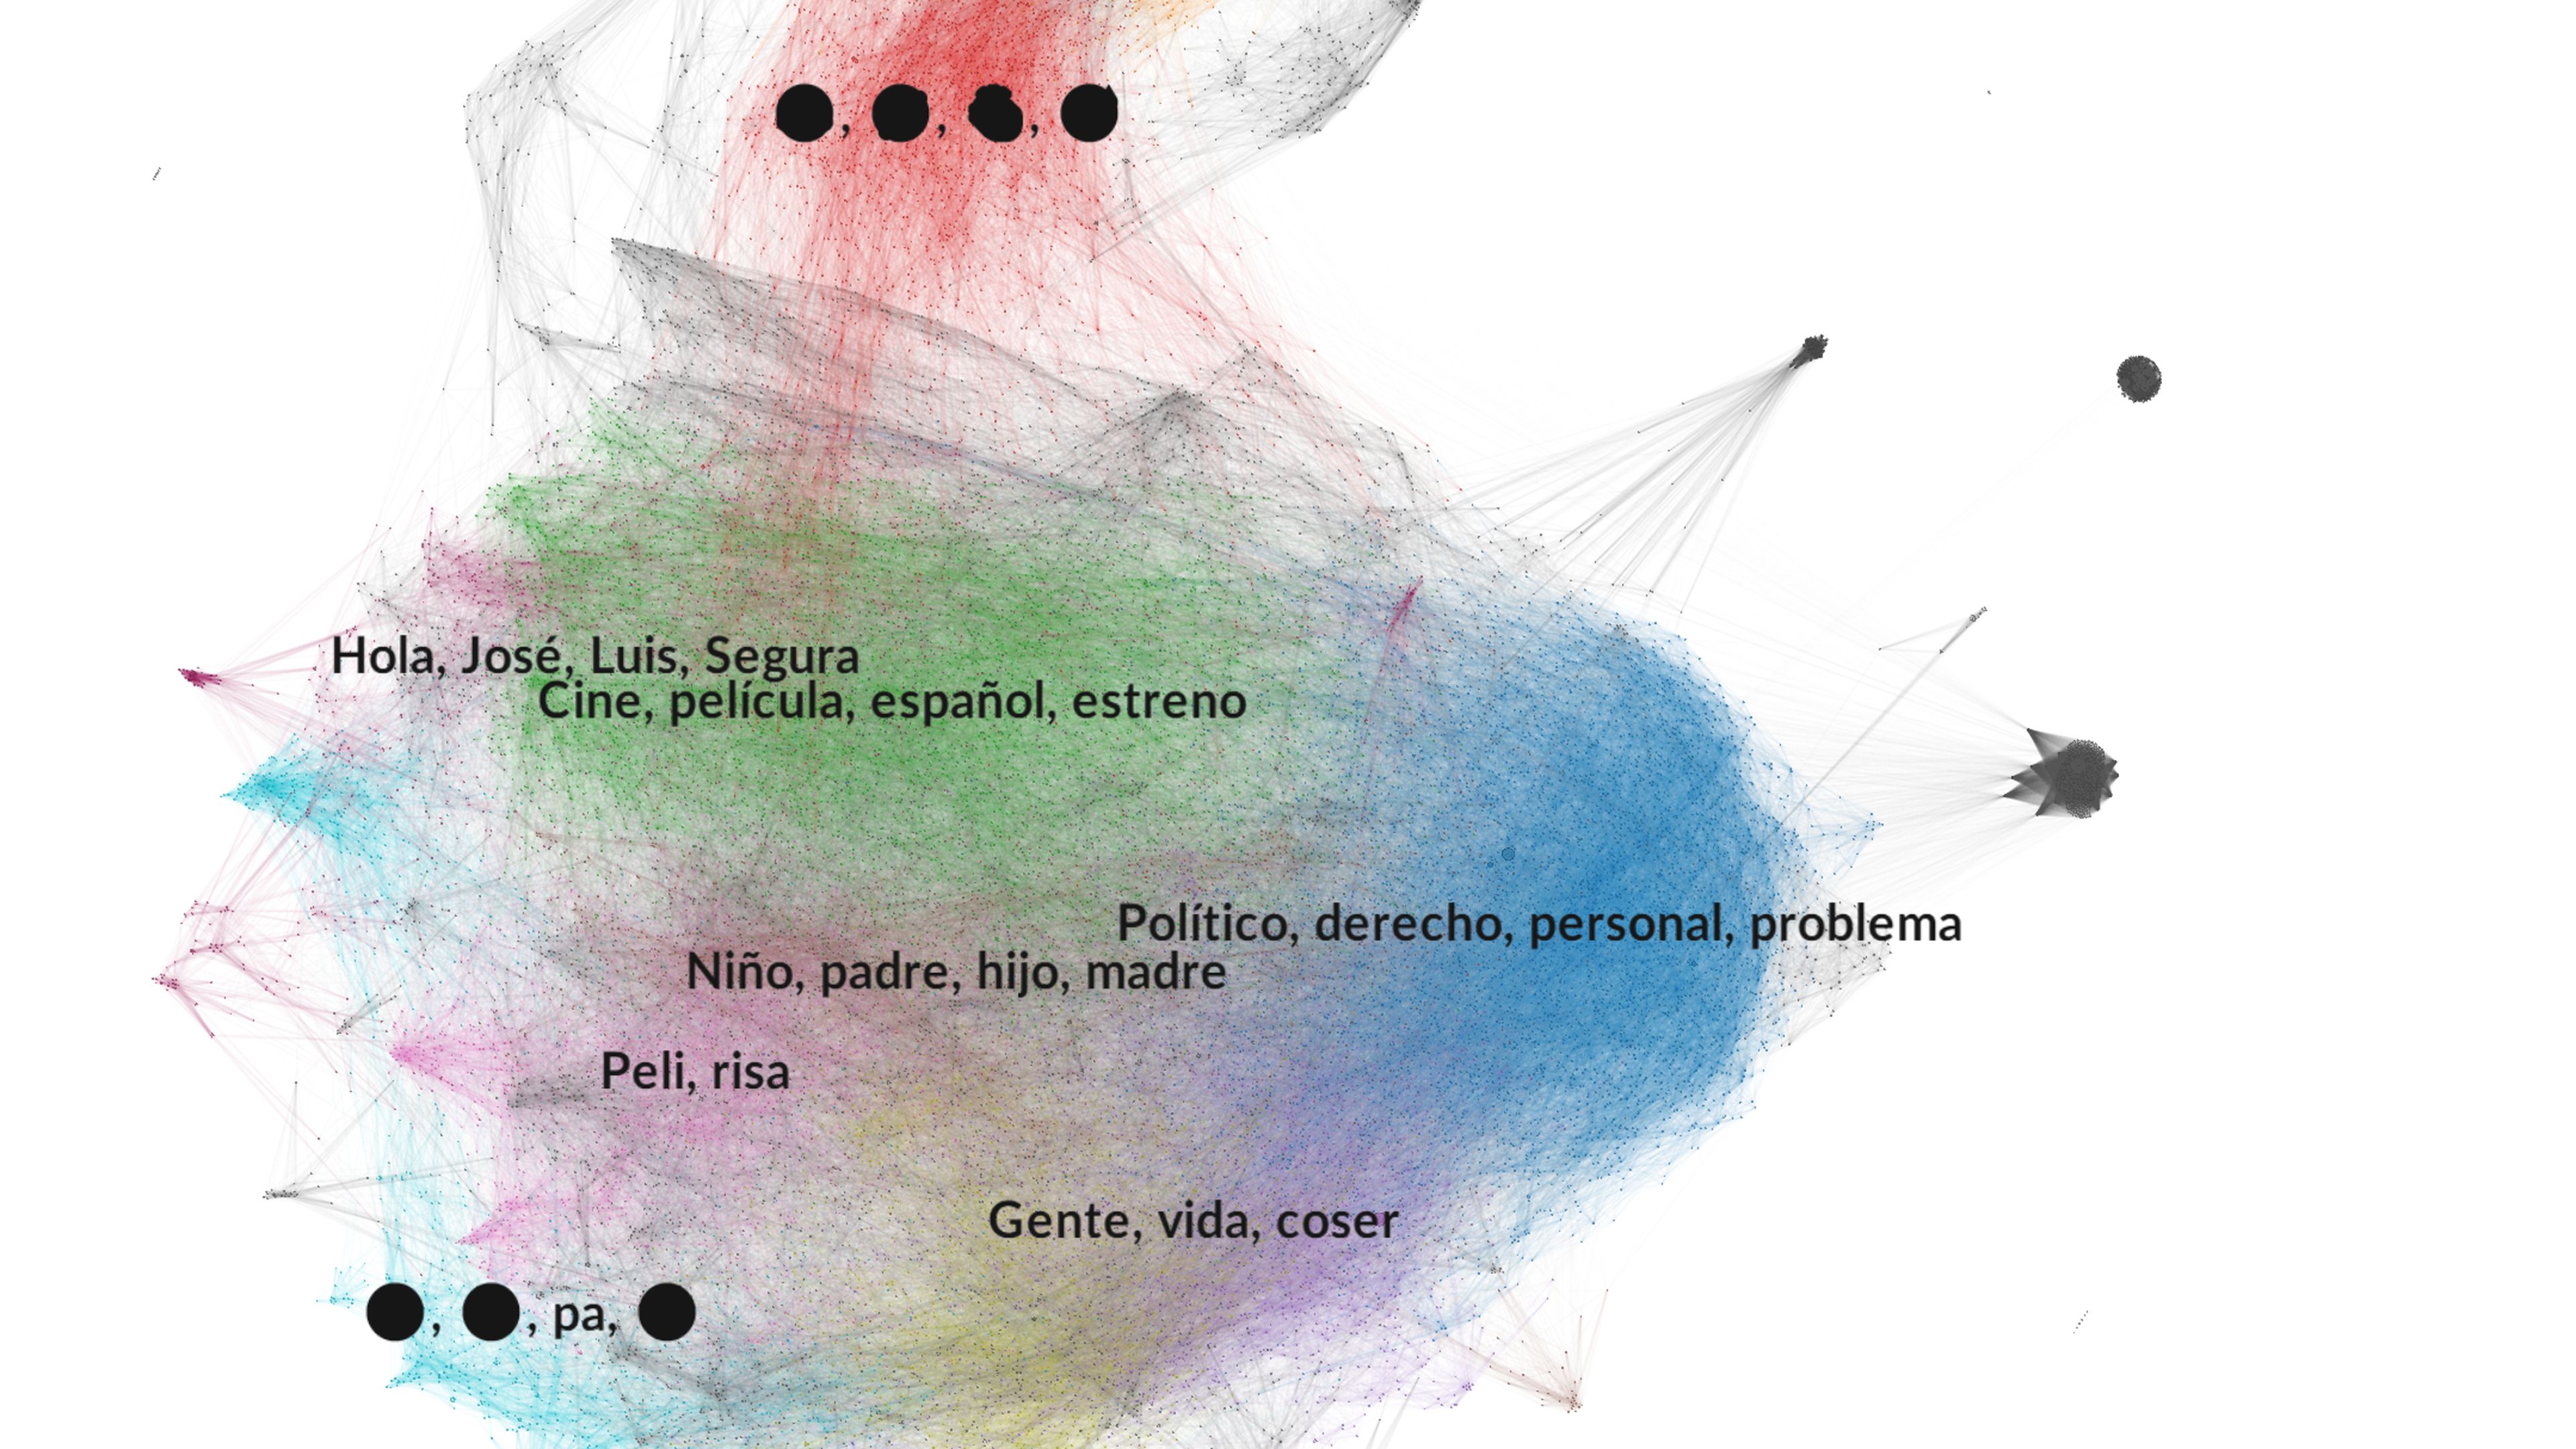 Temas tratados en los tuits que mencionan a Santiago Segura en la red.